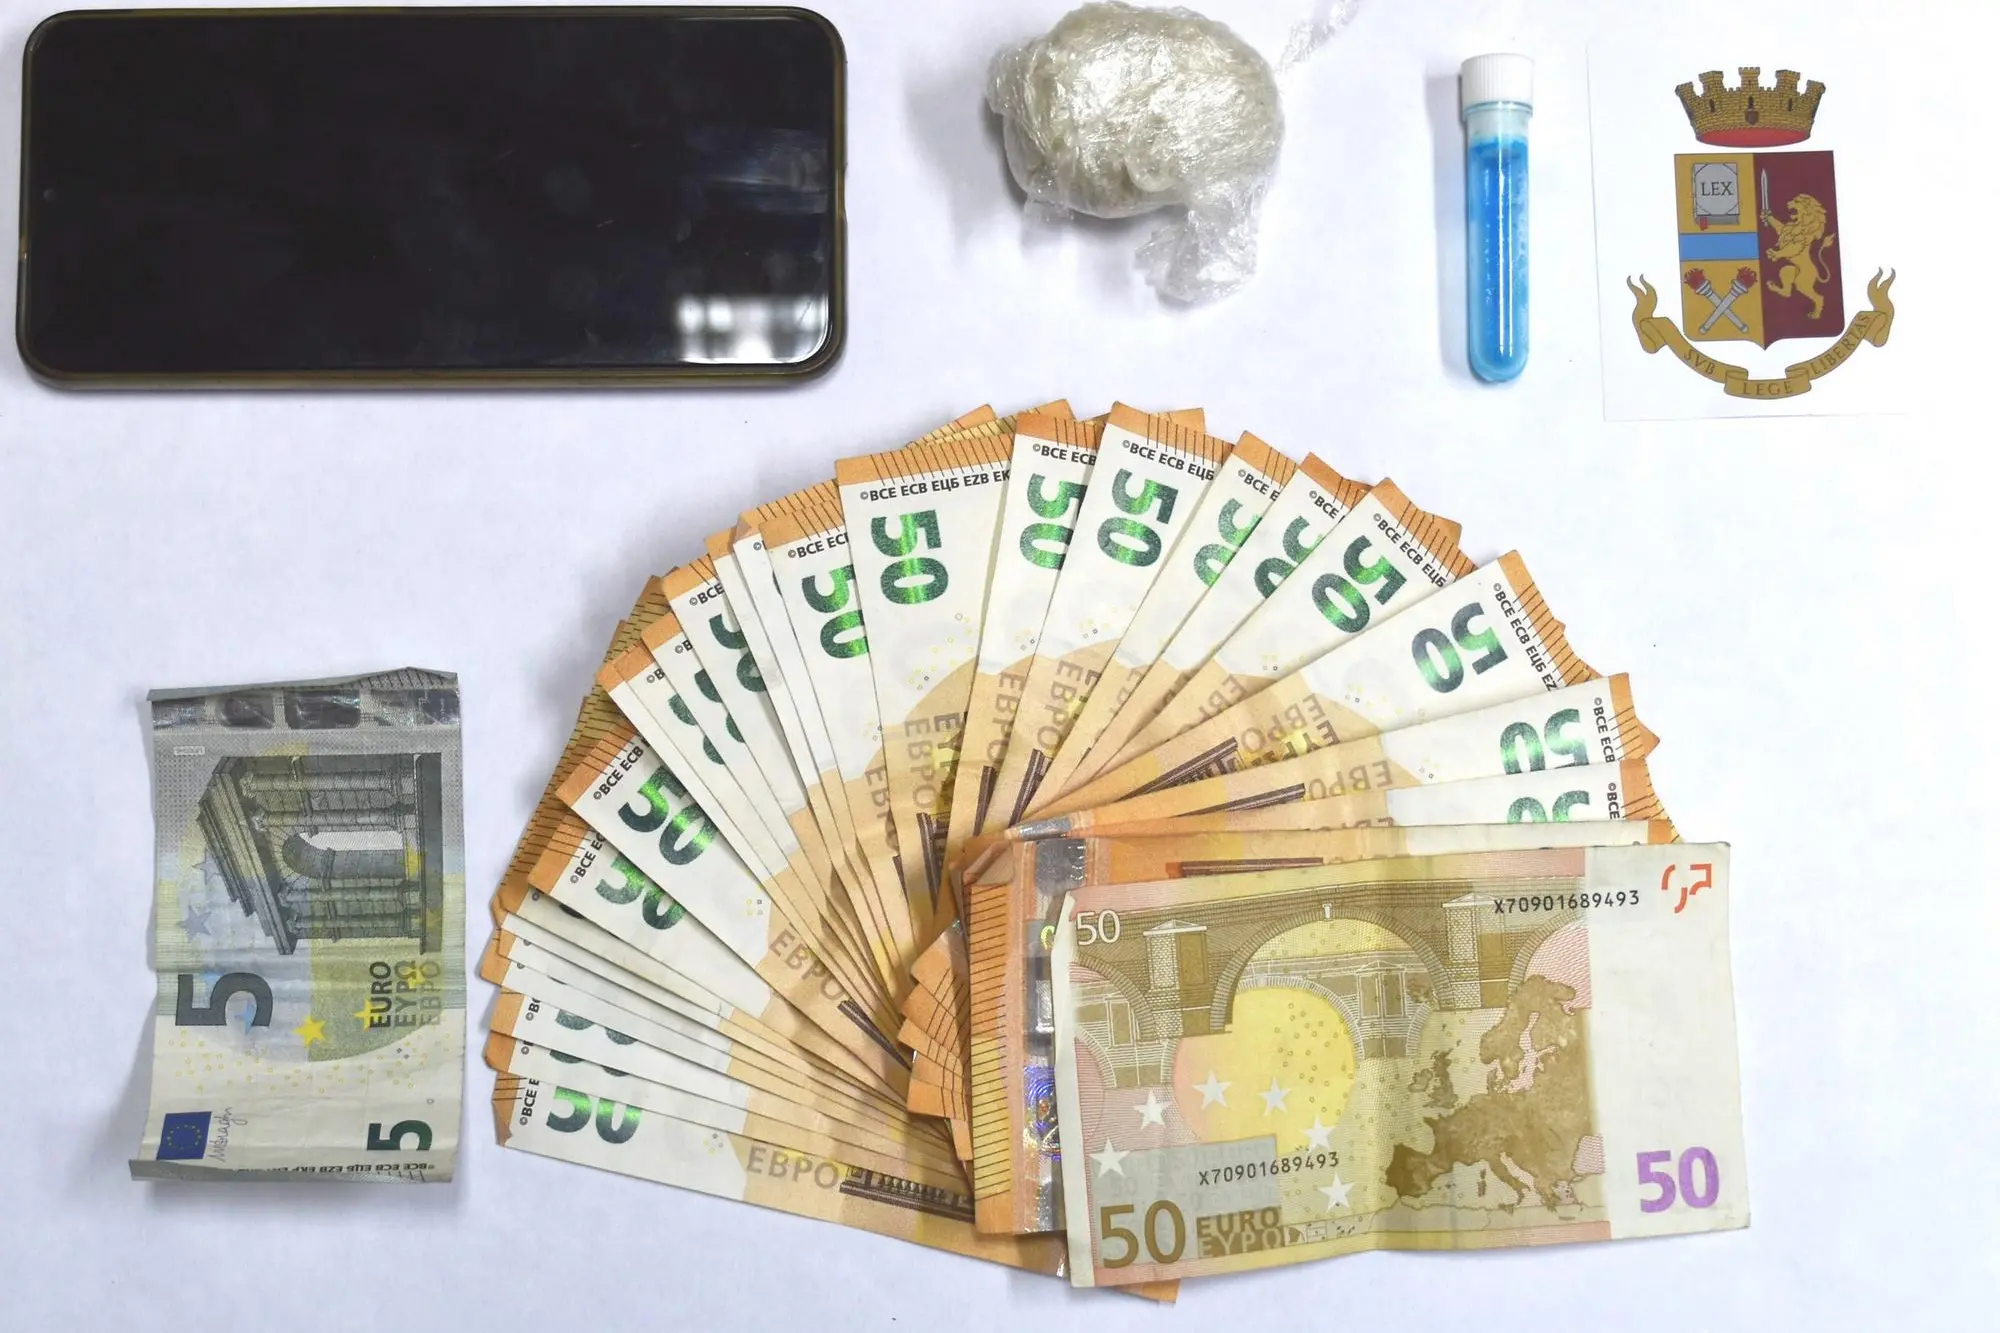 Il denaro e la droga sequestrati all'uomo fermato (foto Polizia di Stato)